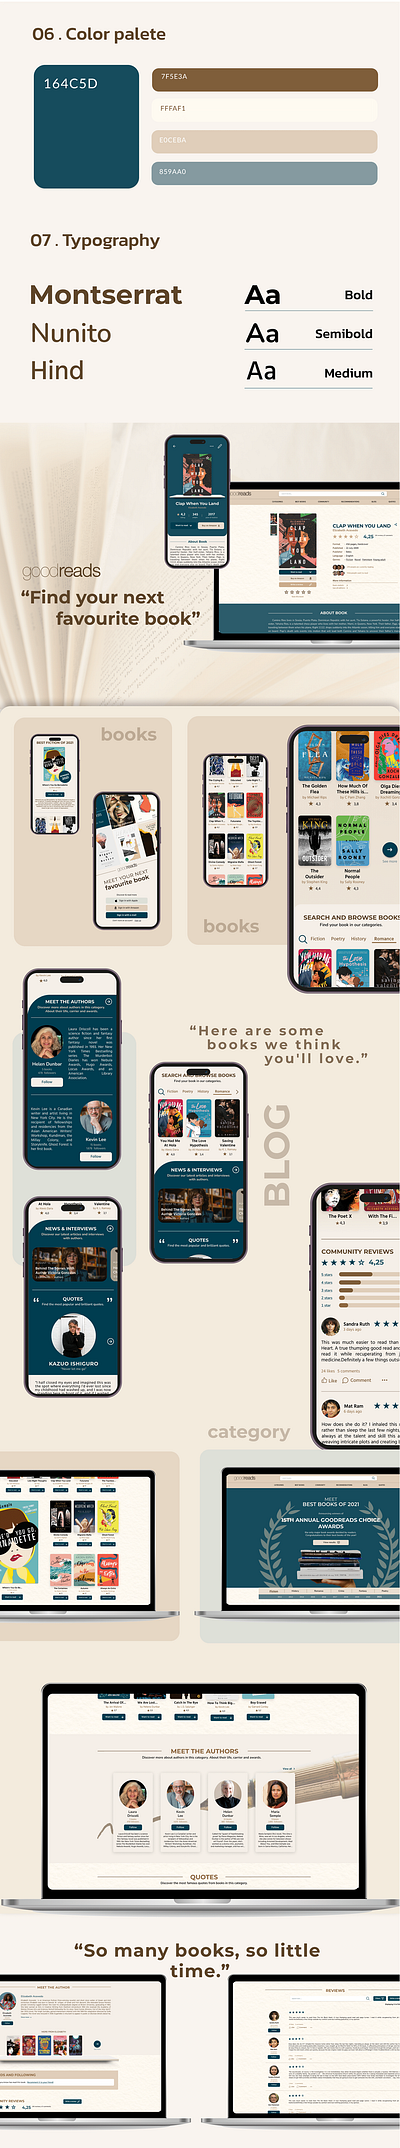 Book Lovers Website Redesign UX& UI branding design full website graphic design landing page design ui ux website